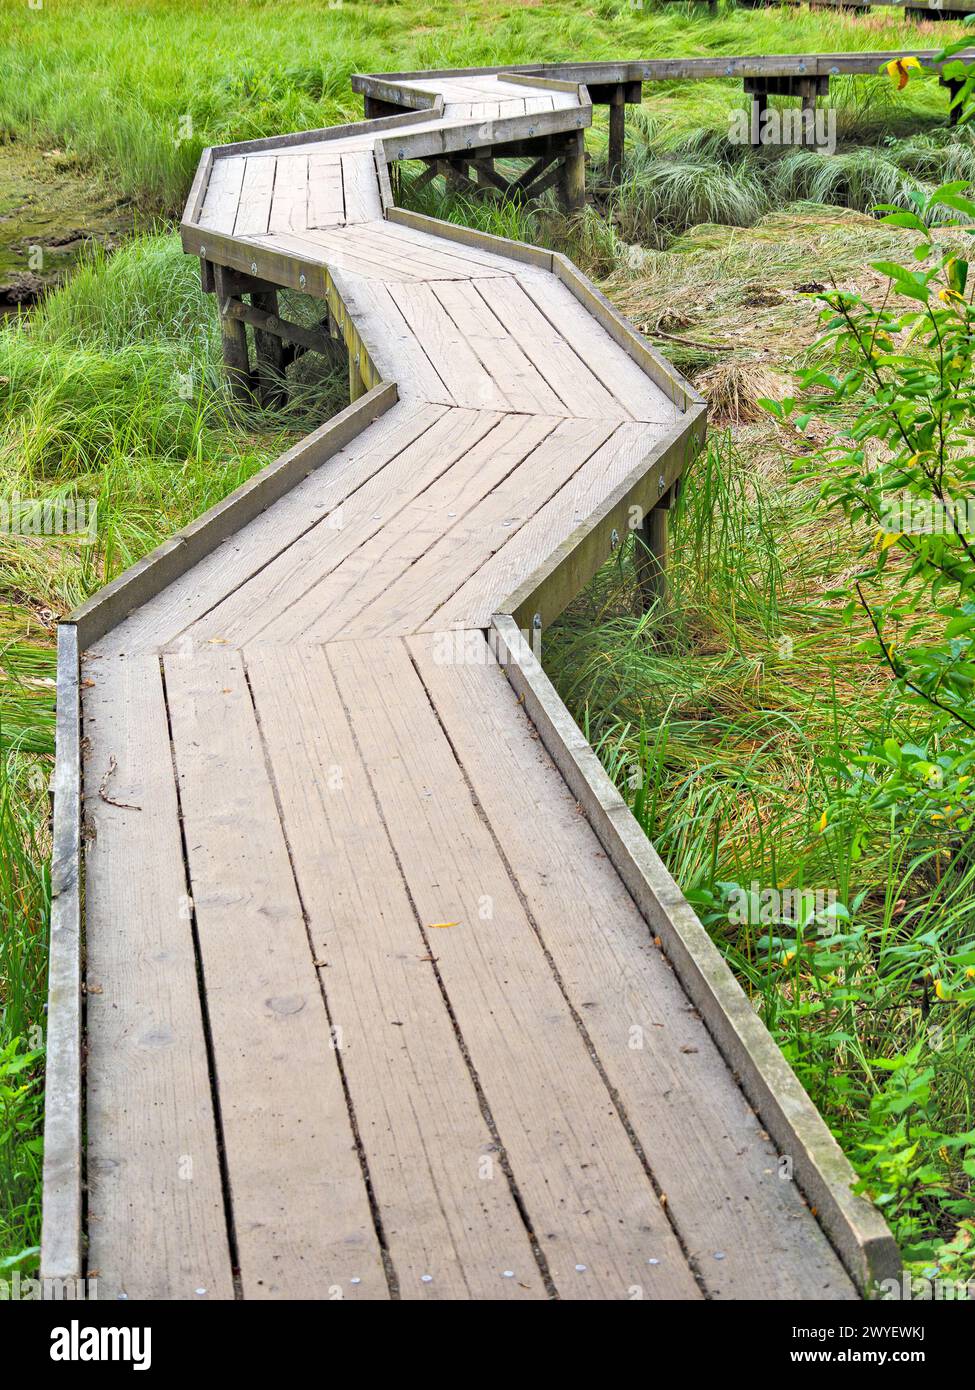 Wooden flooring pathway over the swampy terrain Stock Photo